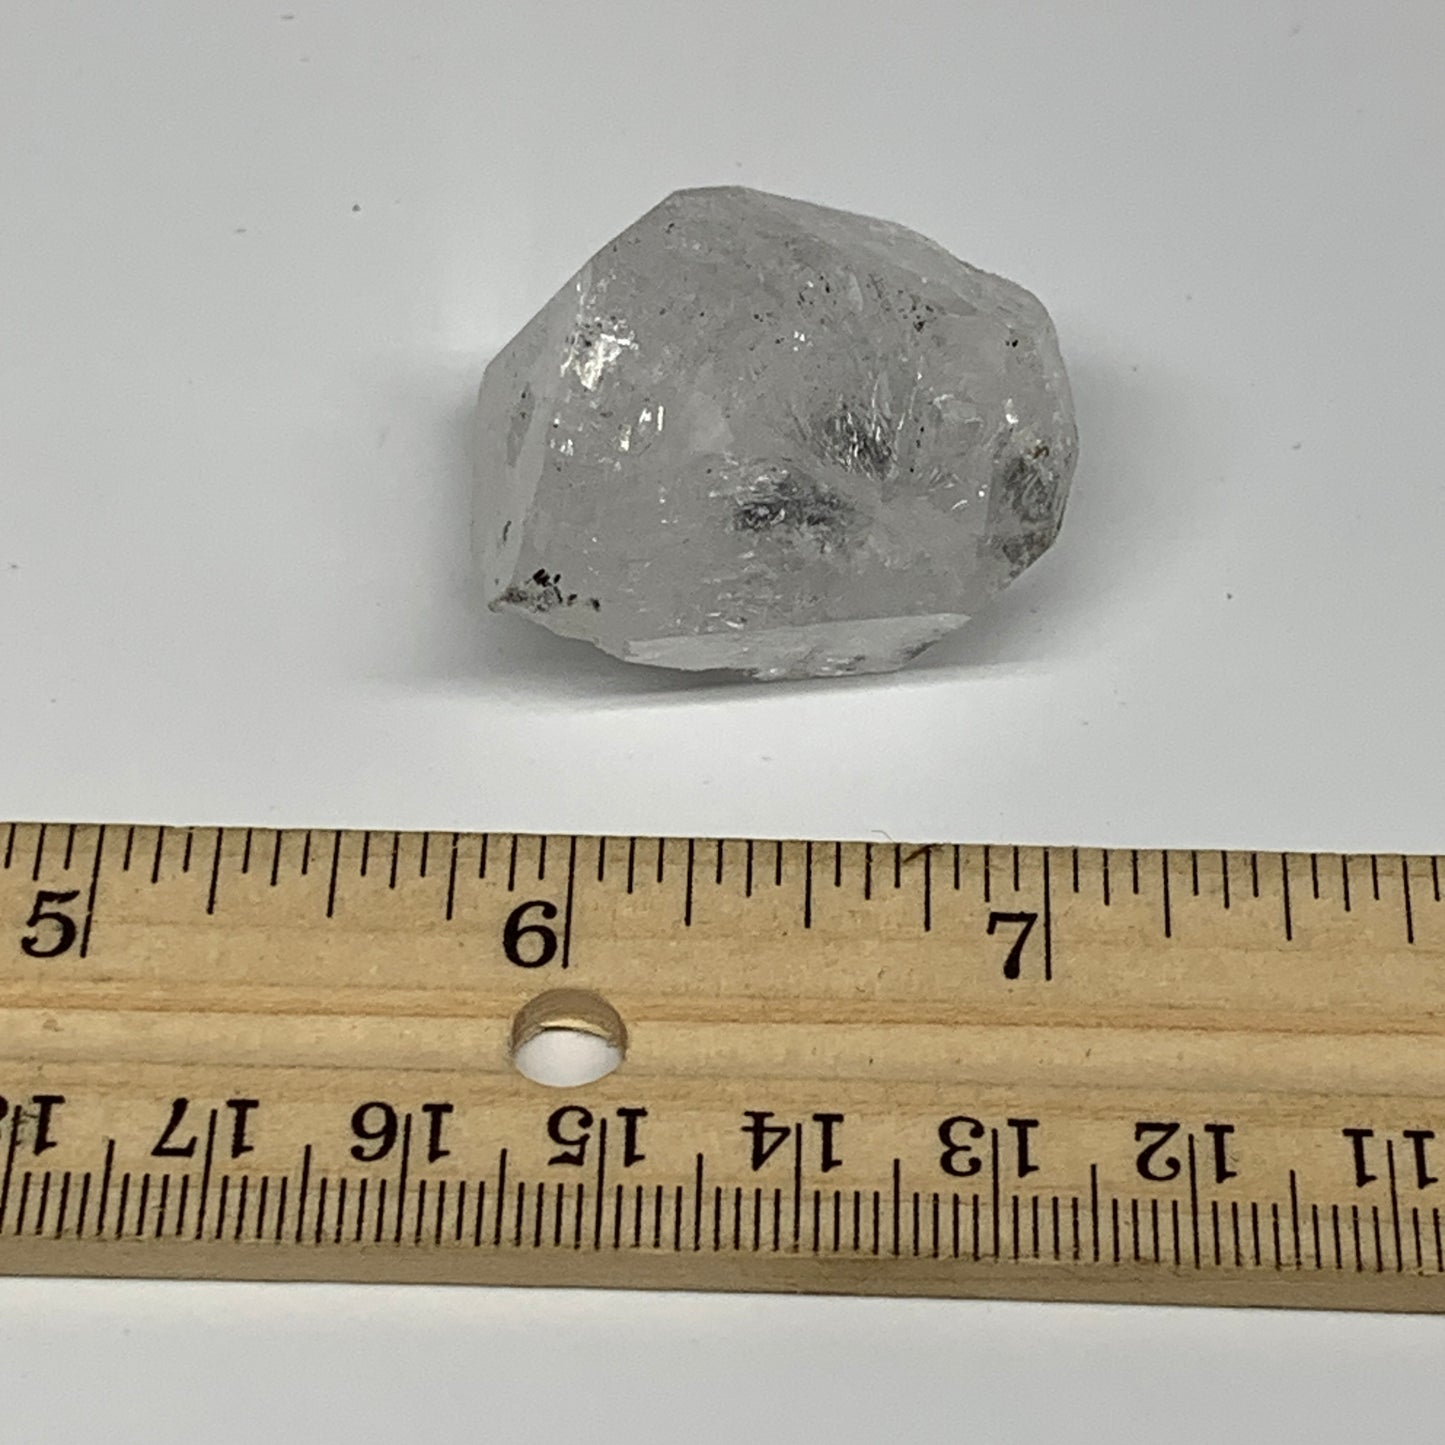 26.5g, 1.3"x0.9"x1", Natural Window Quartz Crystal Terminated @Pakistan,B27545